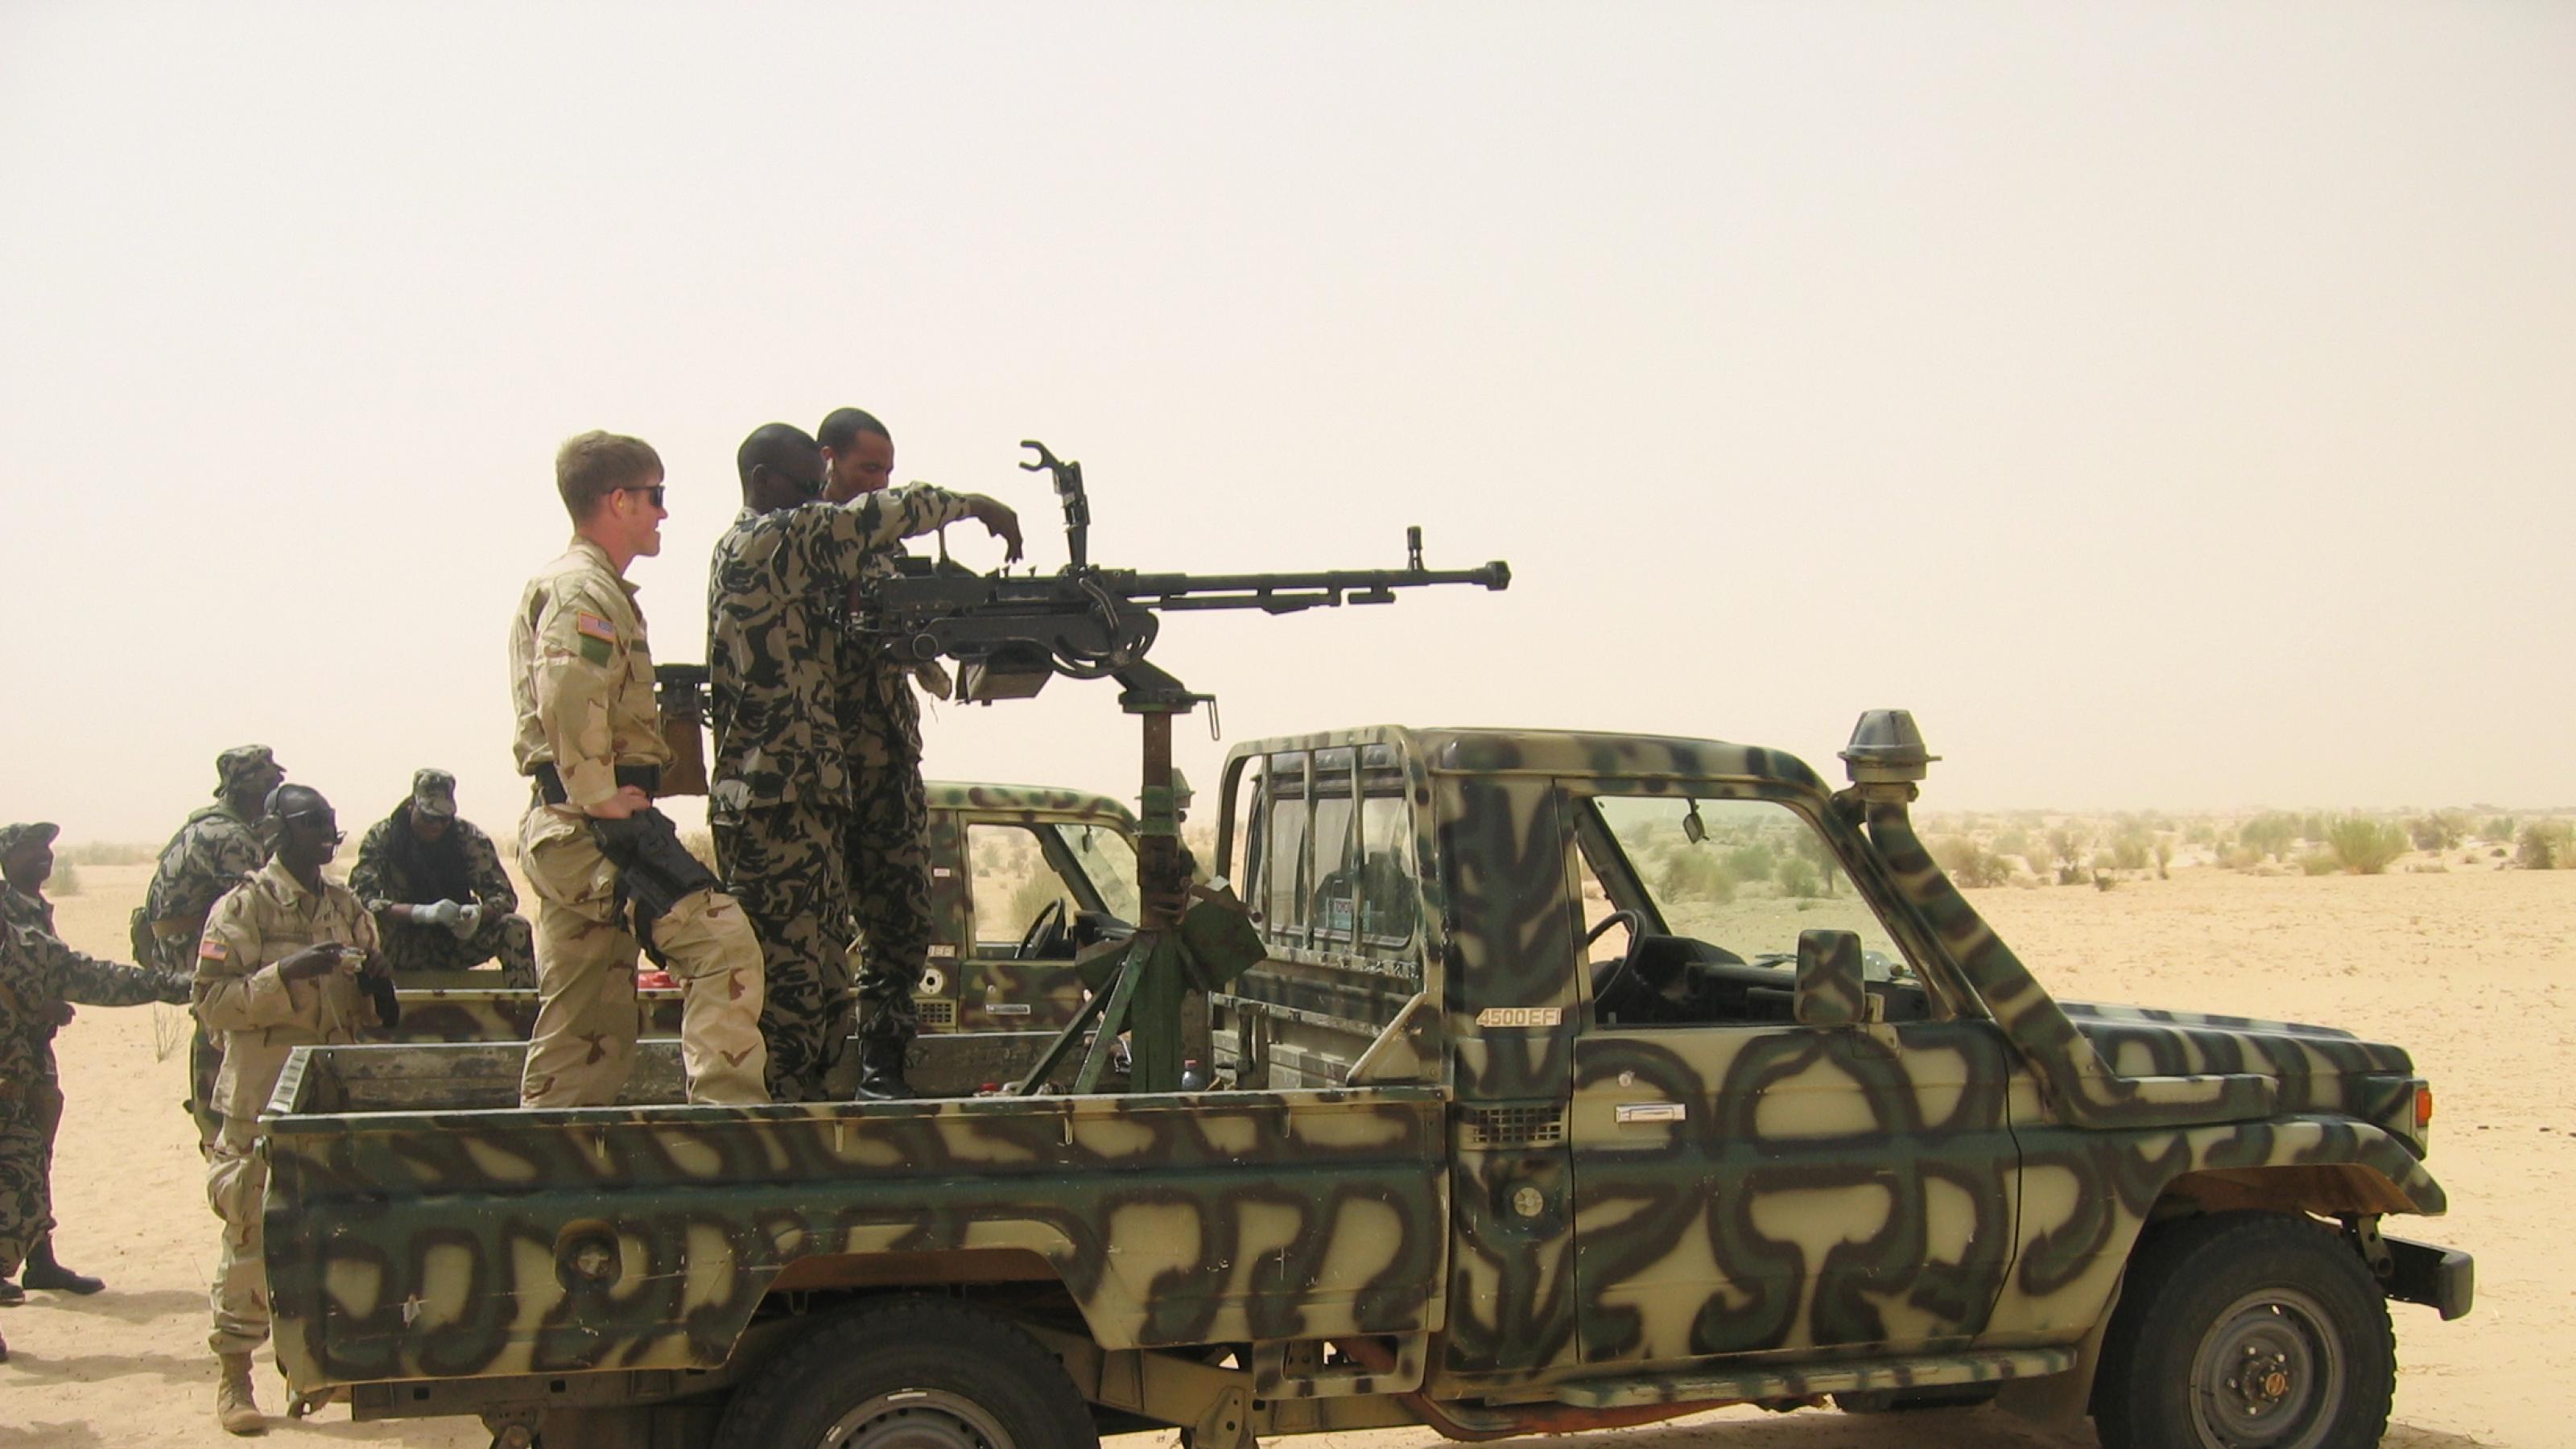 Zu sehen ist ein Pick-Up in militärgrün, in Tarnfarben. Auf der Ladefläche ist ein Geschütz aufmontiert, die Luft ist von Sand verhangen. Am Geschütz stehen US-amerikanische und malische Soldaten – offensichtlich eine Trainingssituation.